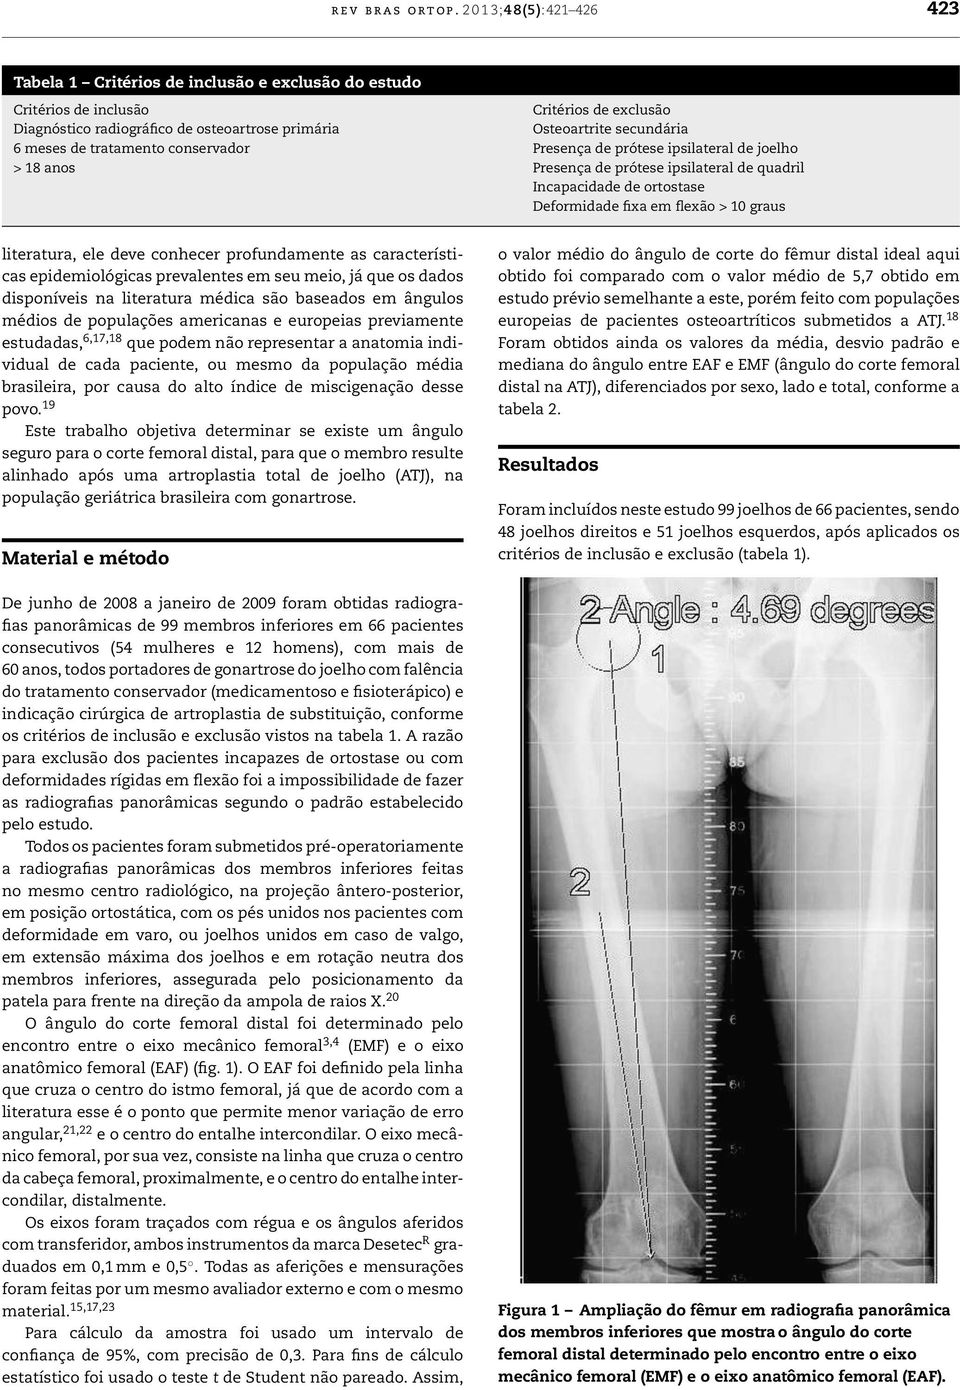 meses de tratamento conservador Presença de prótese ipsilateral de joelho > 18 anos Presença de prótese ipsilateral de quadril Incapacidade de ortostase Deformidade fixa em flexão > 10 graus